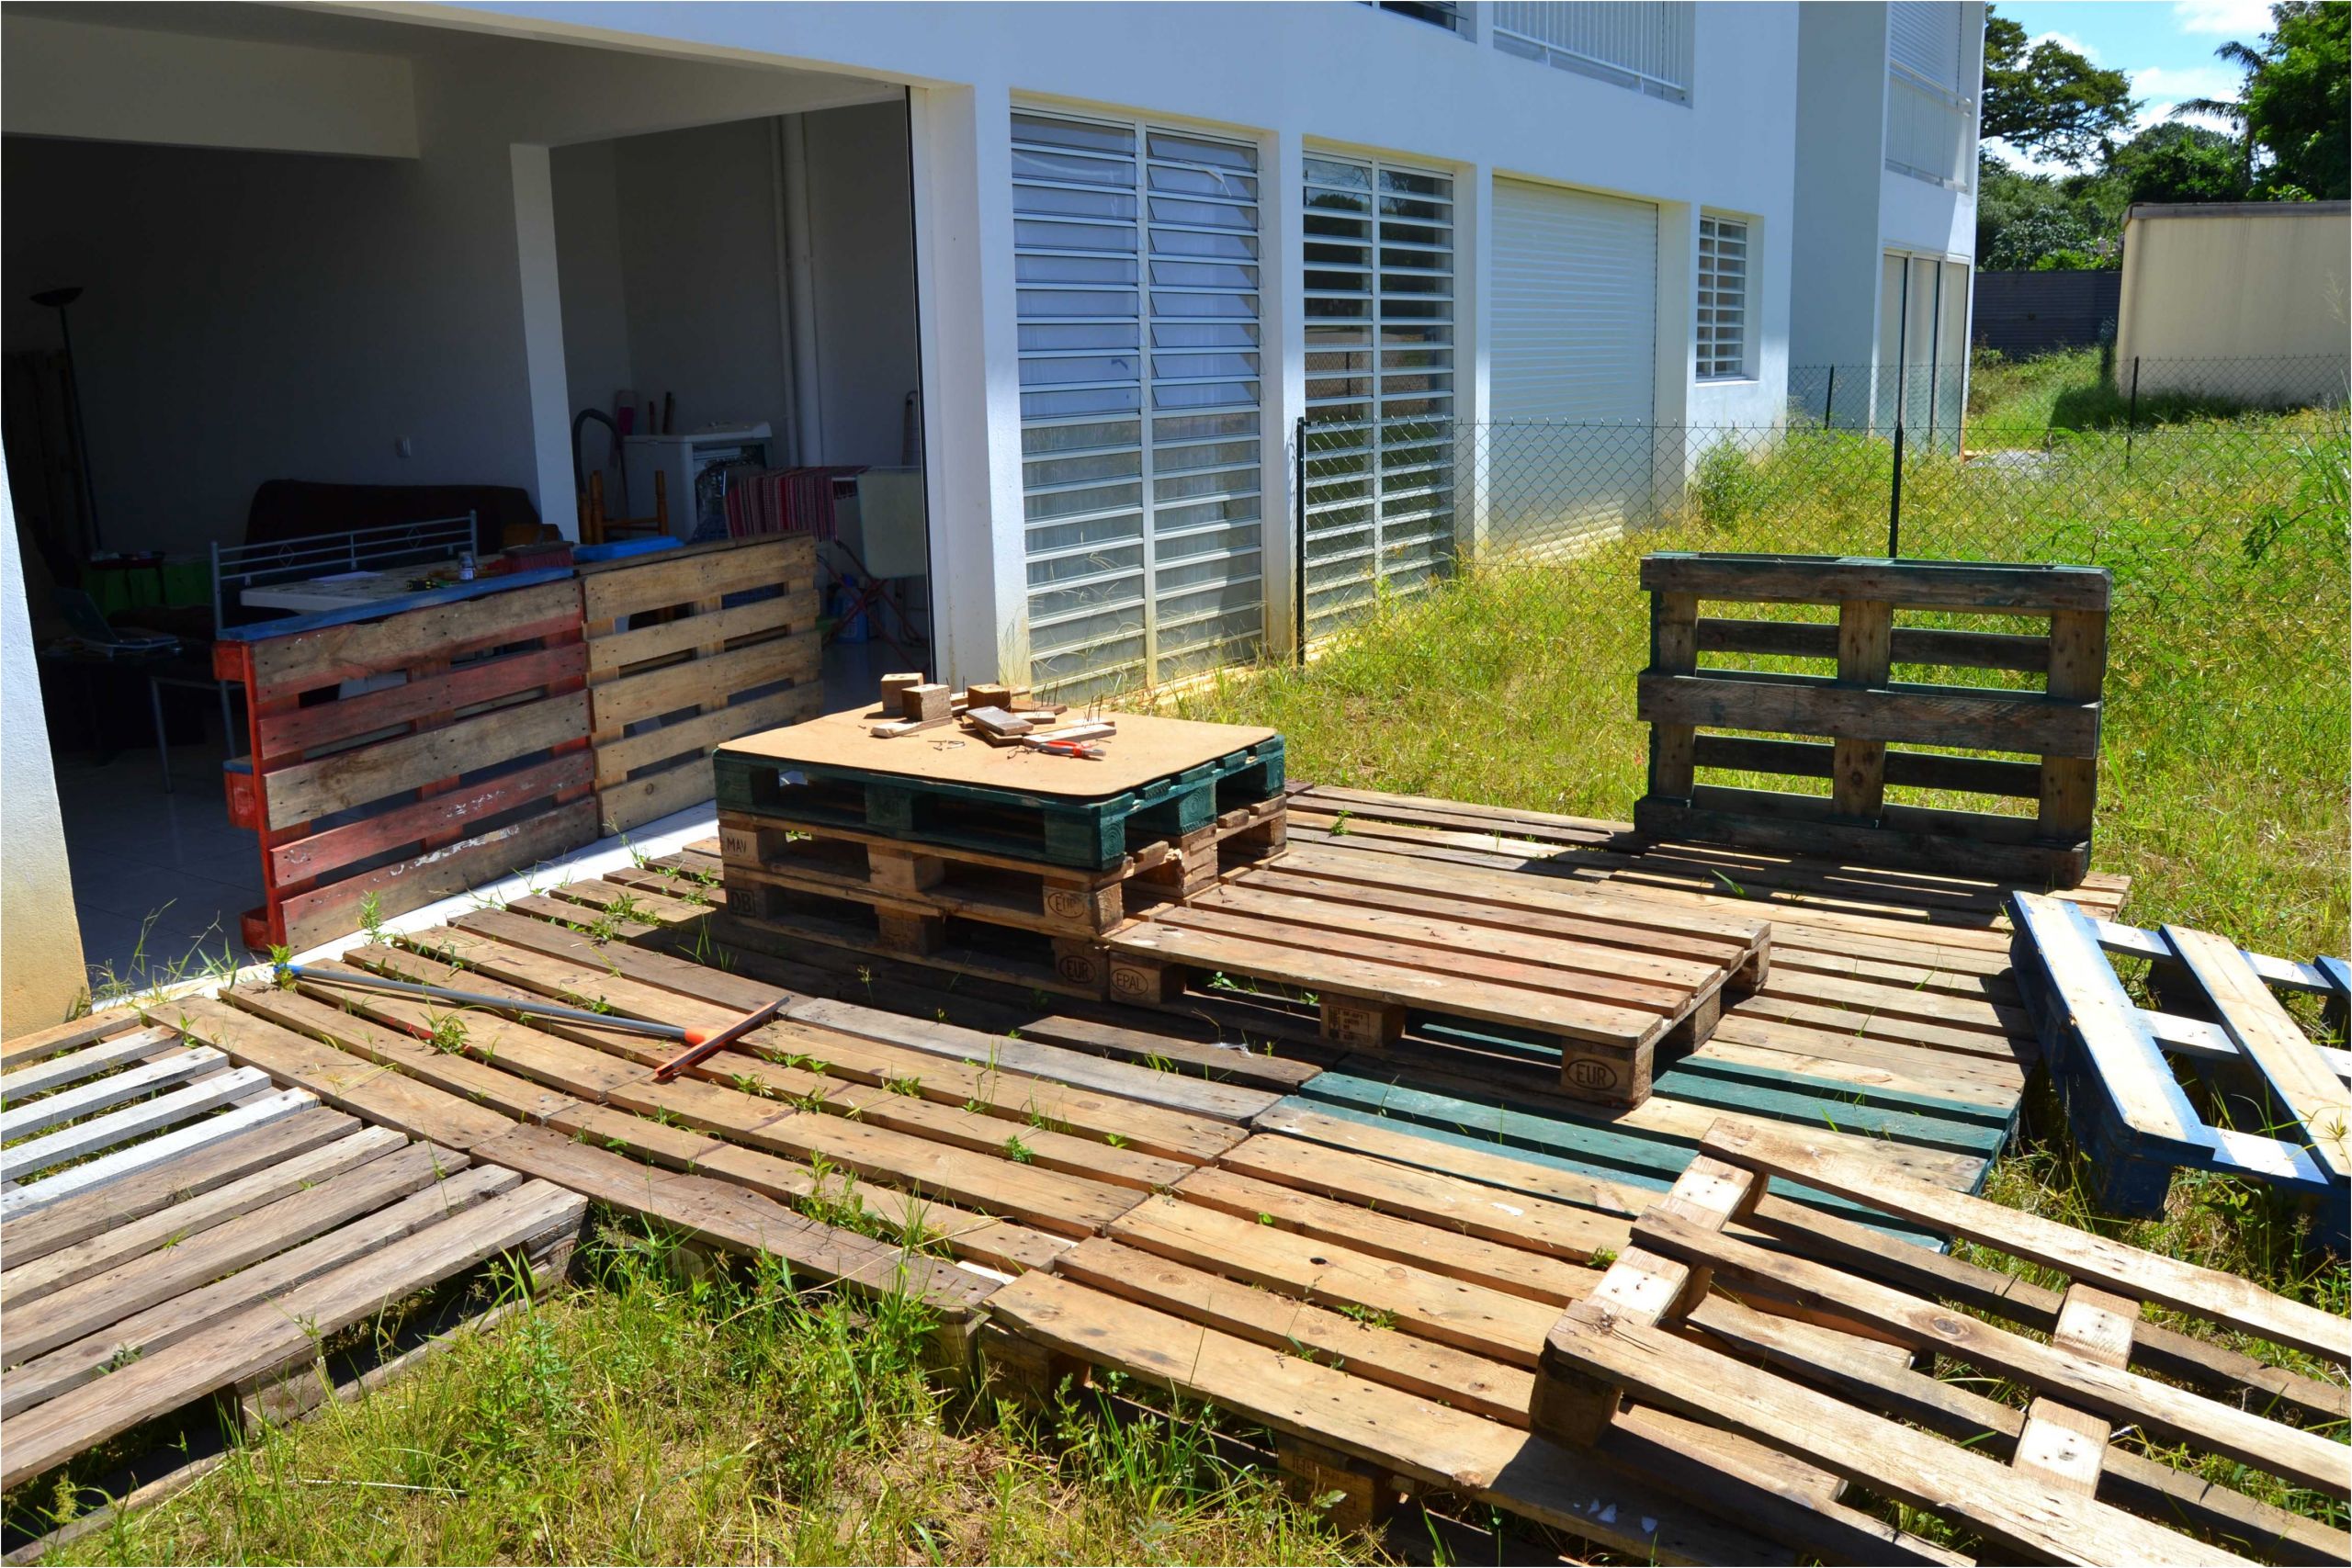 fabriquer terrasse bois inspiration ment fabriquer son salon de jardin en palettes bois de fabriquer terrasse bois